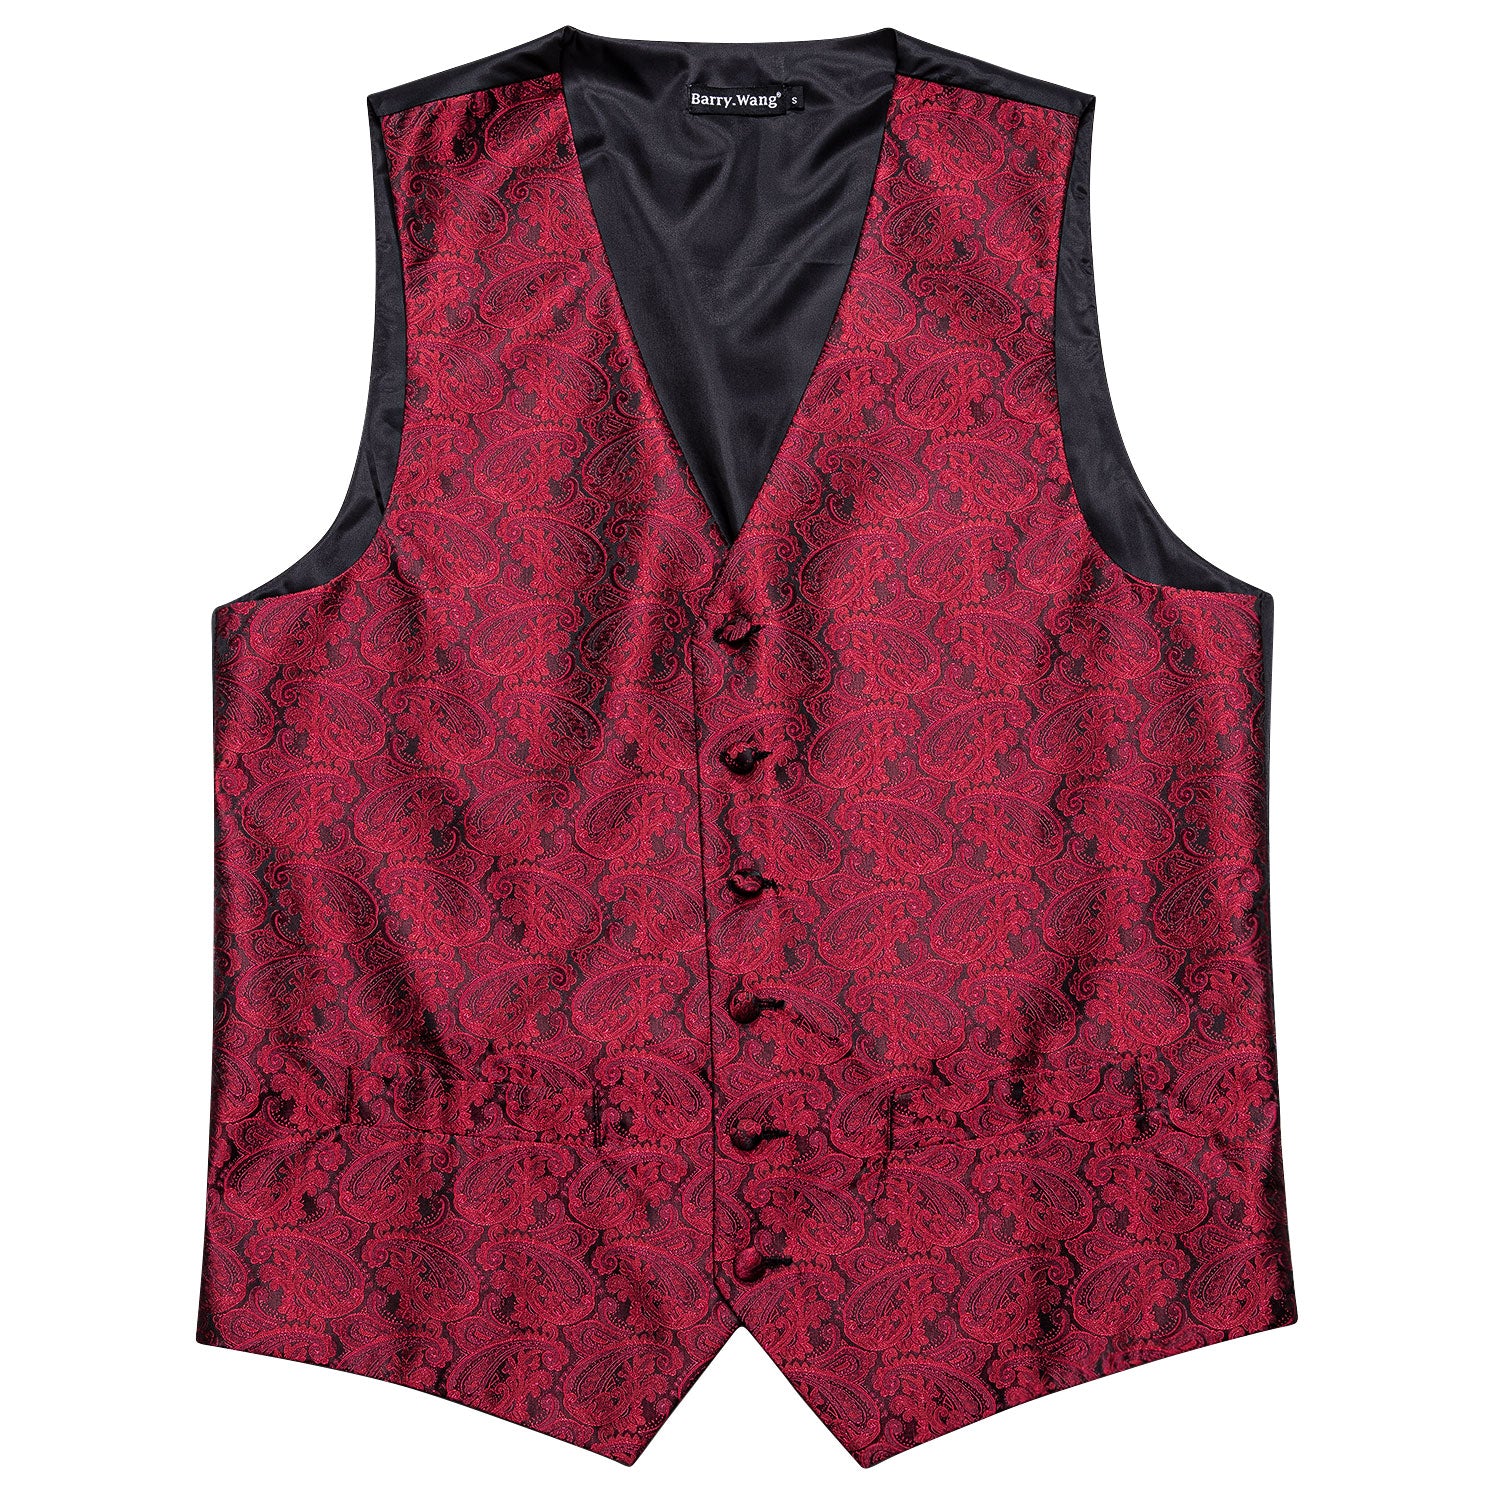 Luxury Men's Red Paisley Silk Vest Red Necktie Pocket Square Cufflinks Set